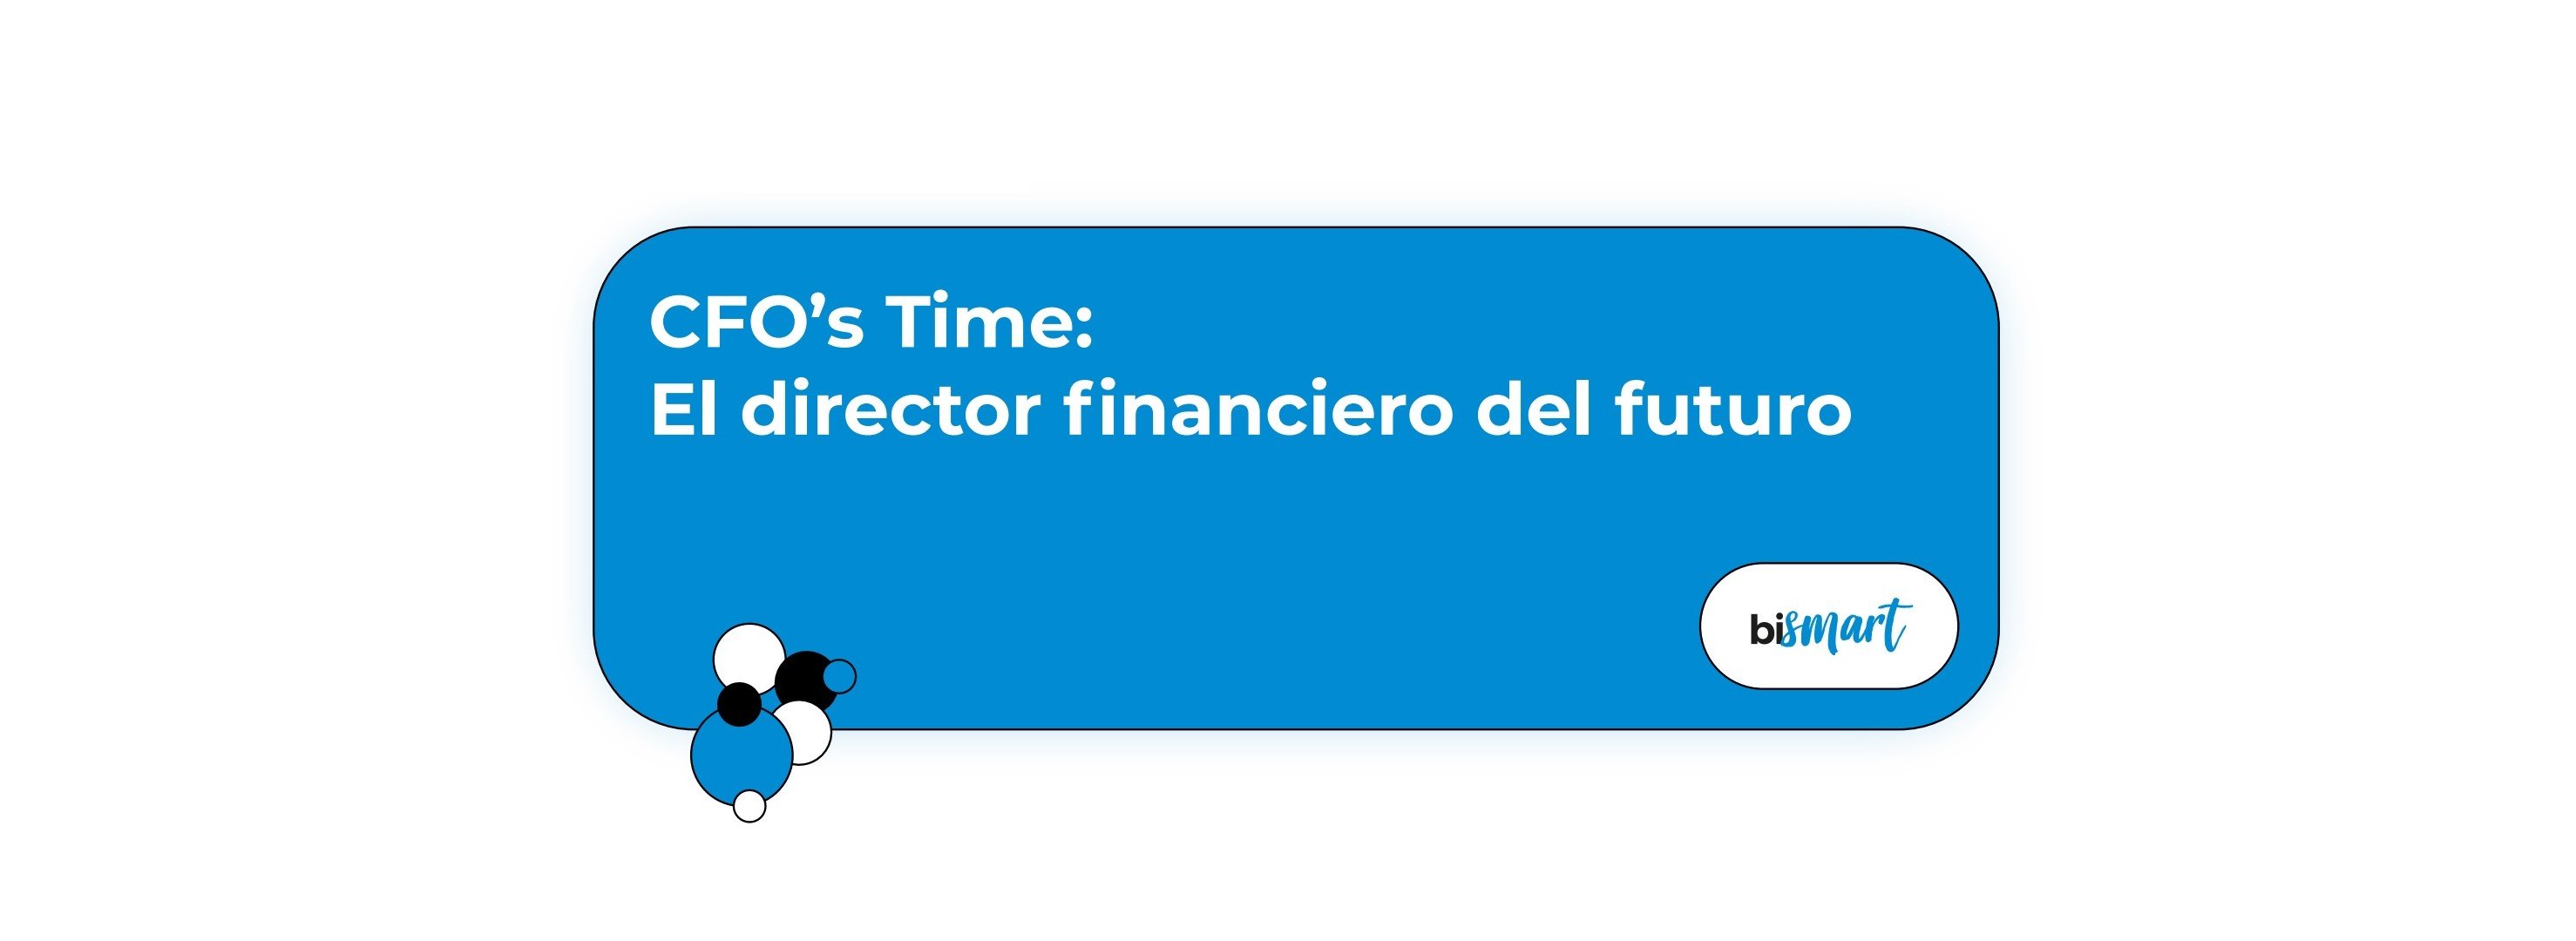 Guía CFO Time El director financiero del futuro